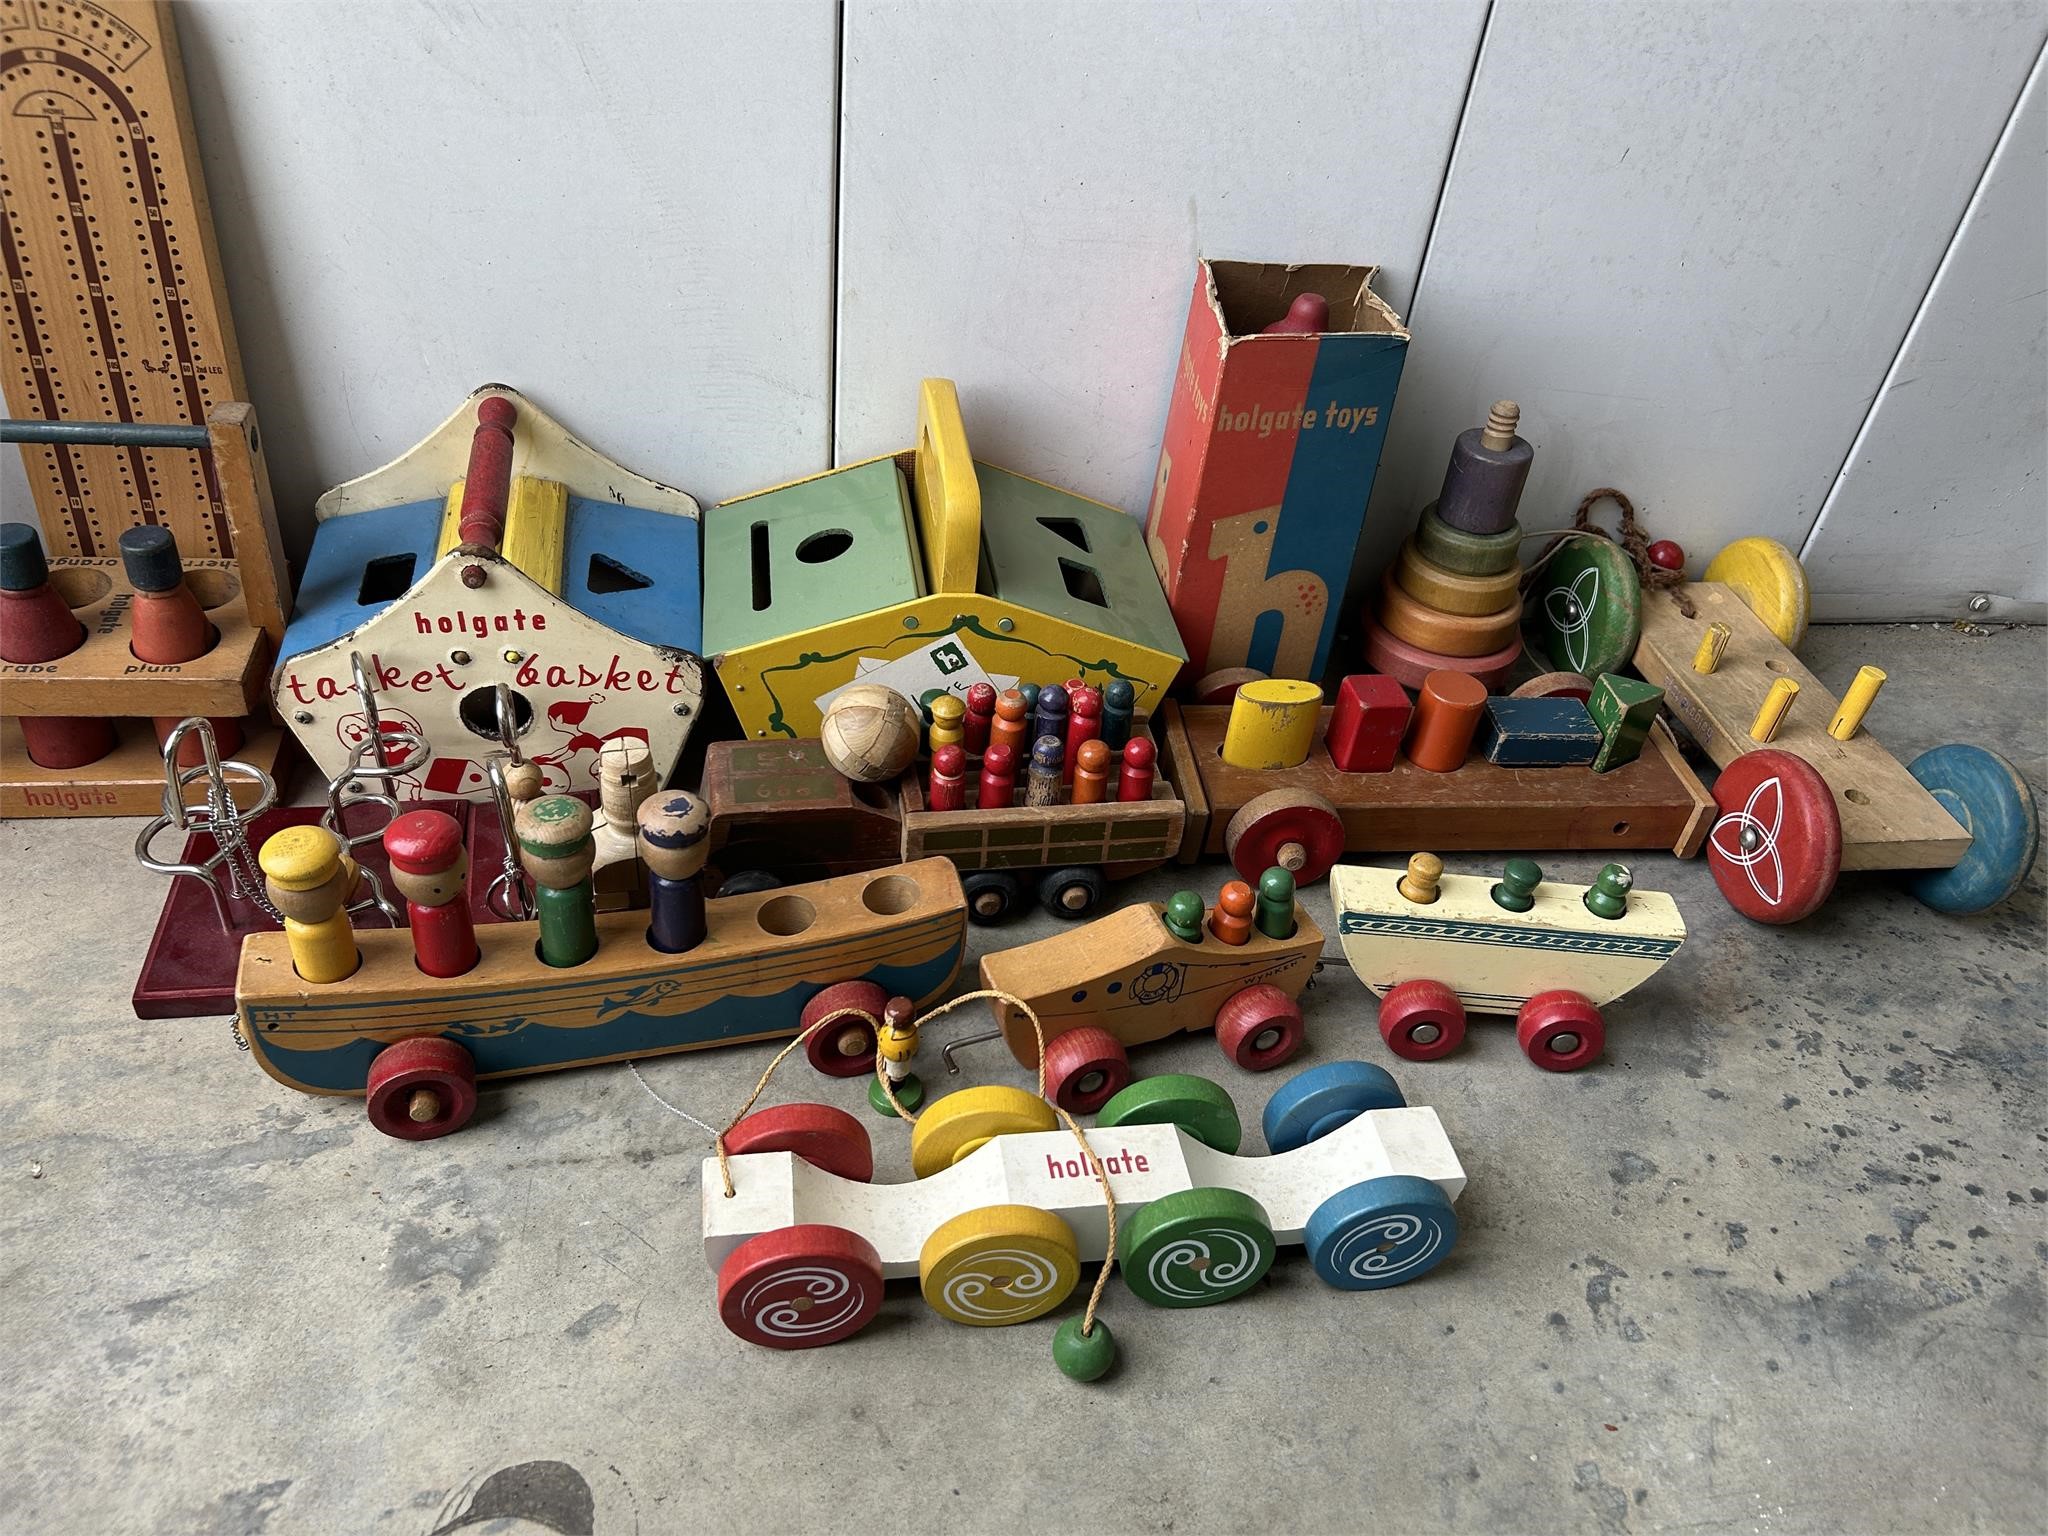 Antique Toys & Finds - Pensacola Storage Units!